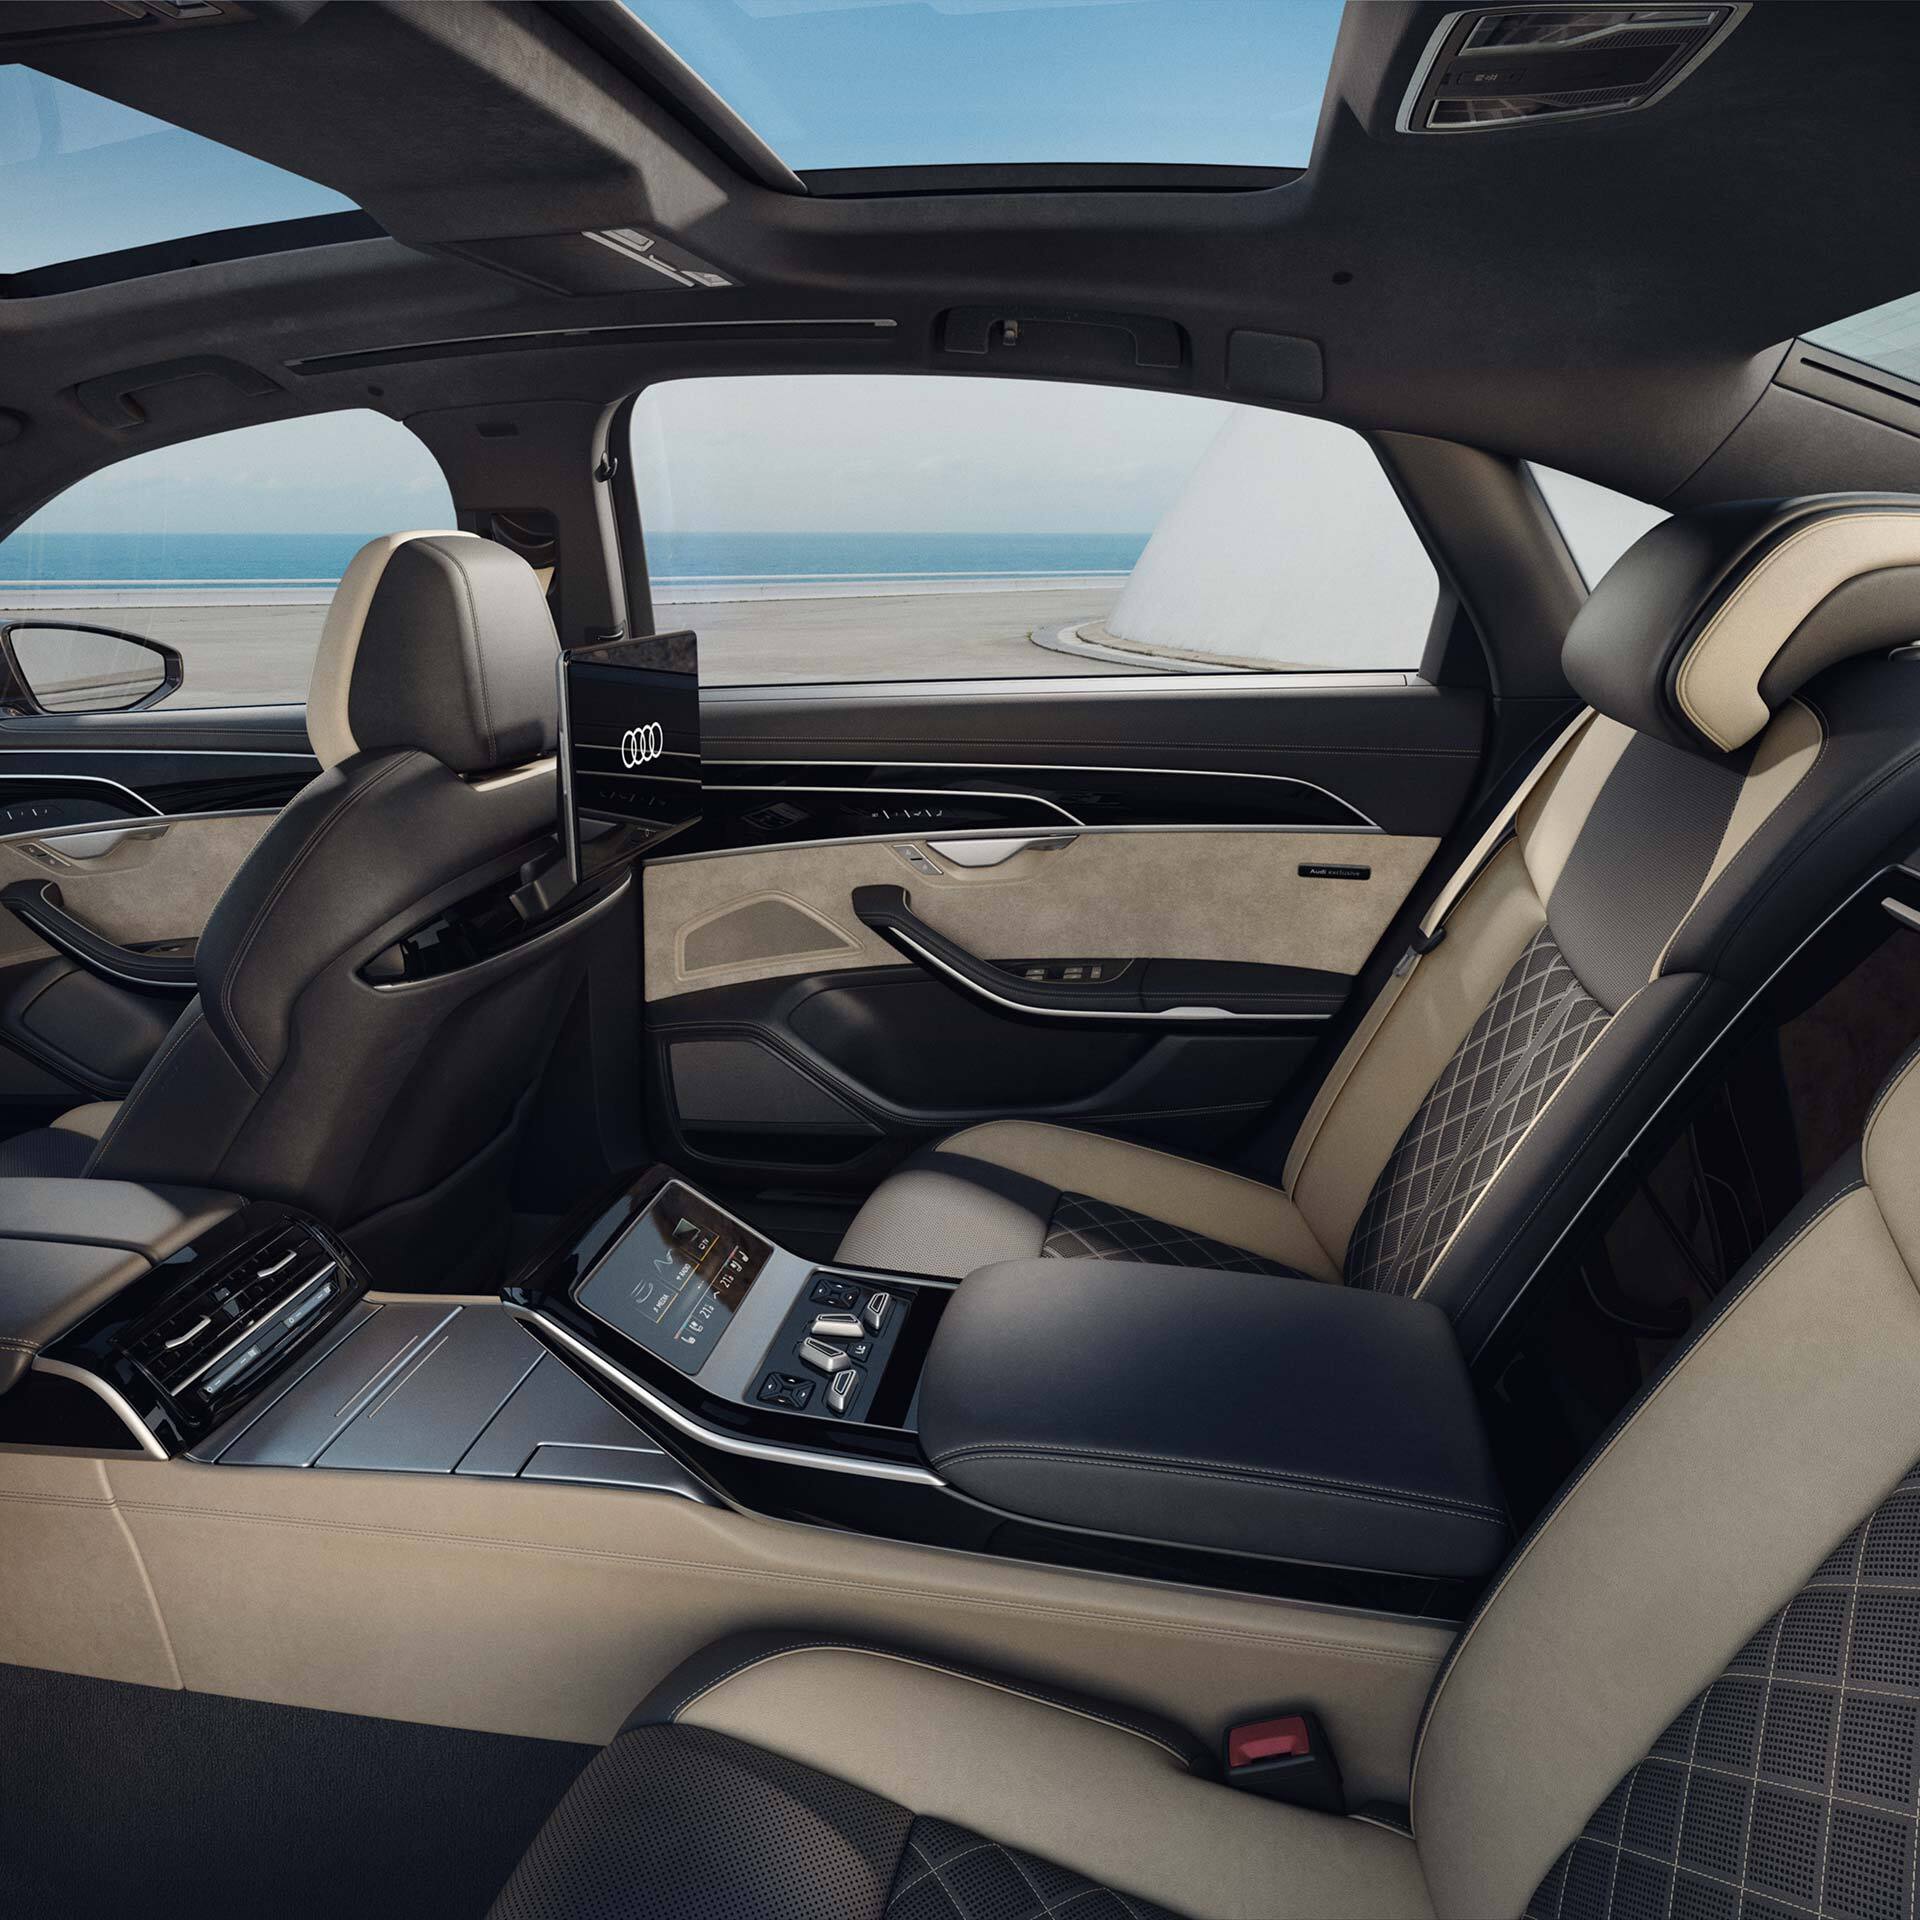 Hinterer Innenraum Audi A8 L in Ausstattung Audi exclusive